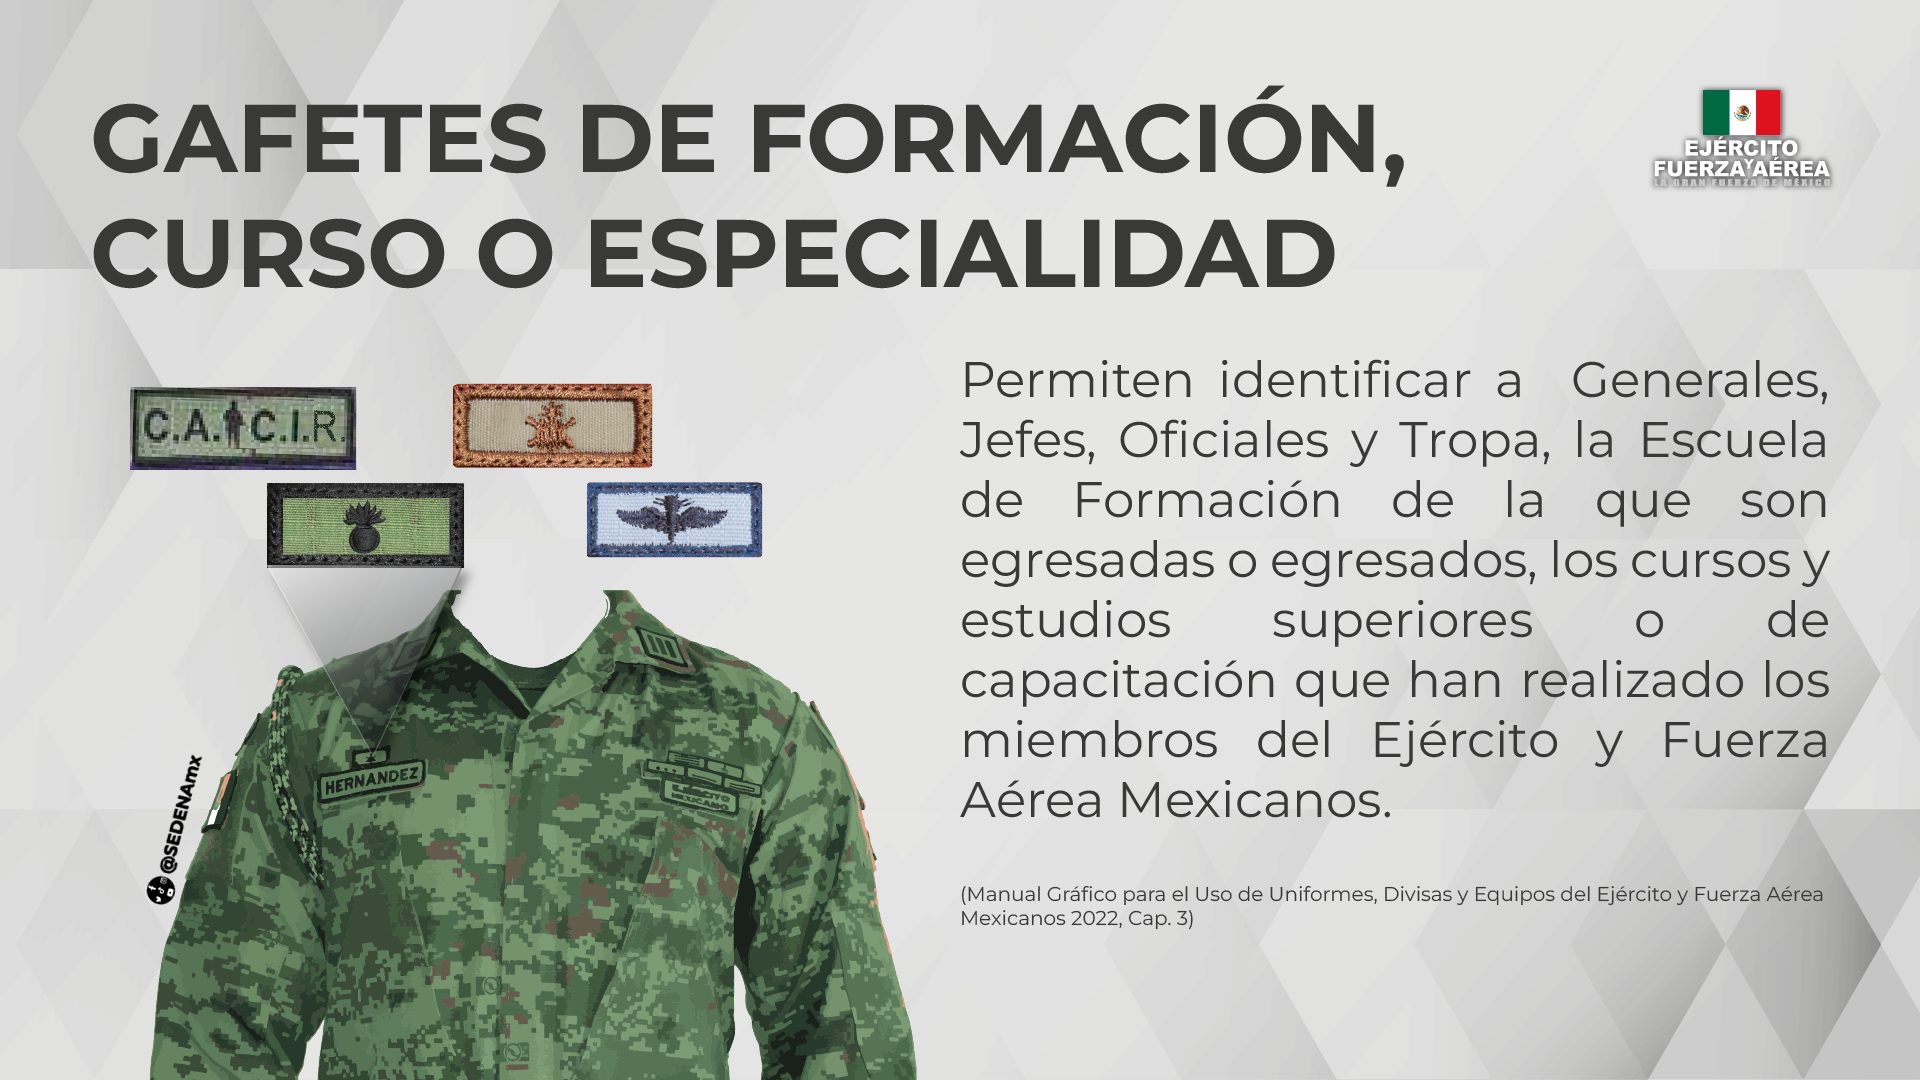 SEDENA. Esto las insignias de los militares Guanajuato